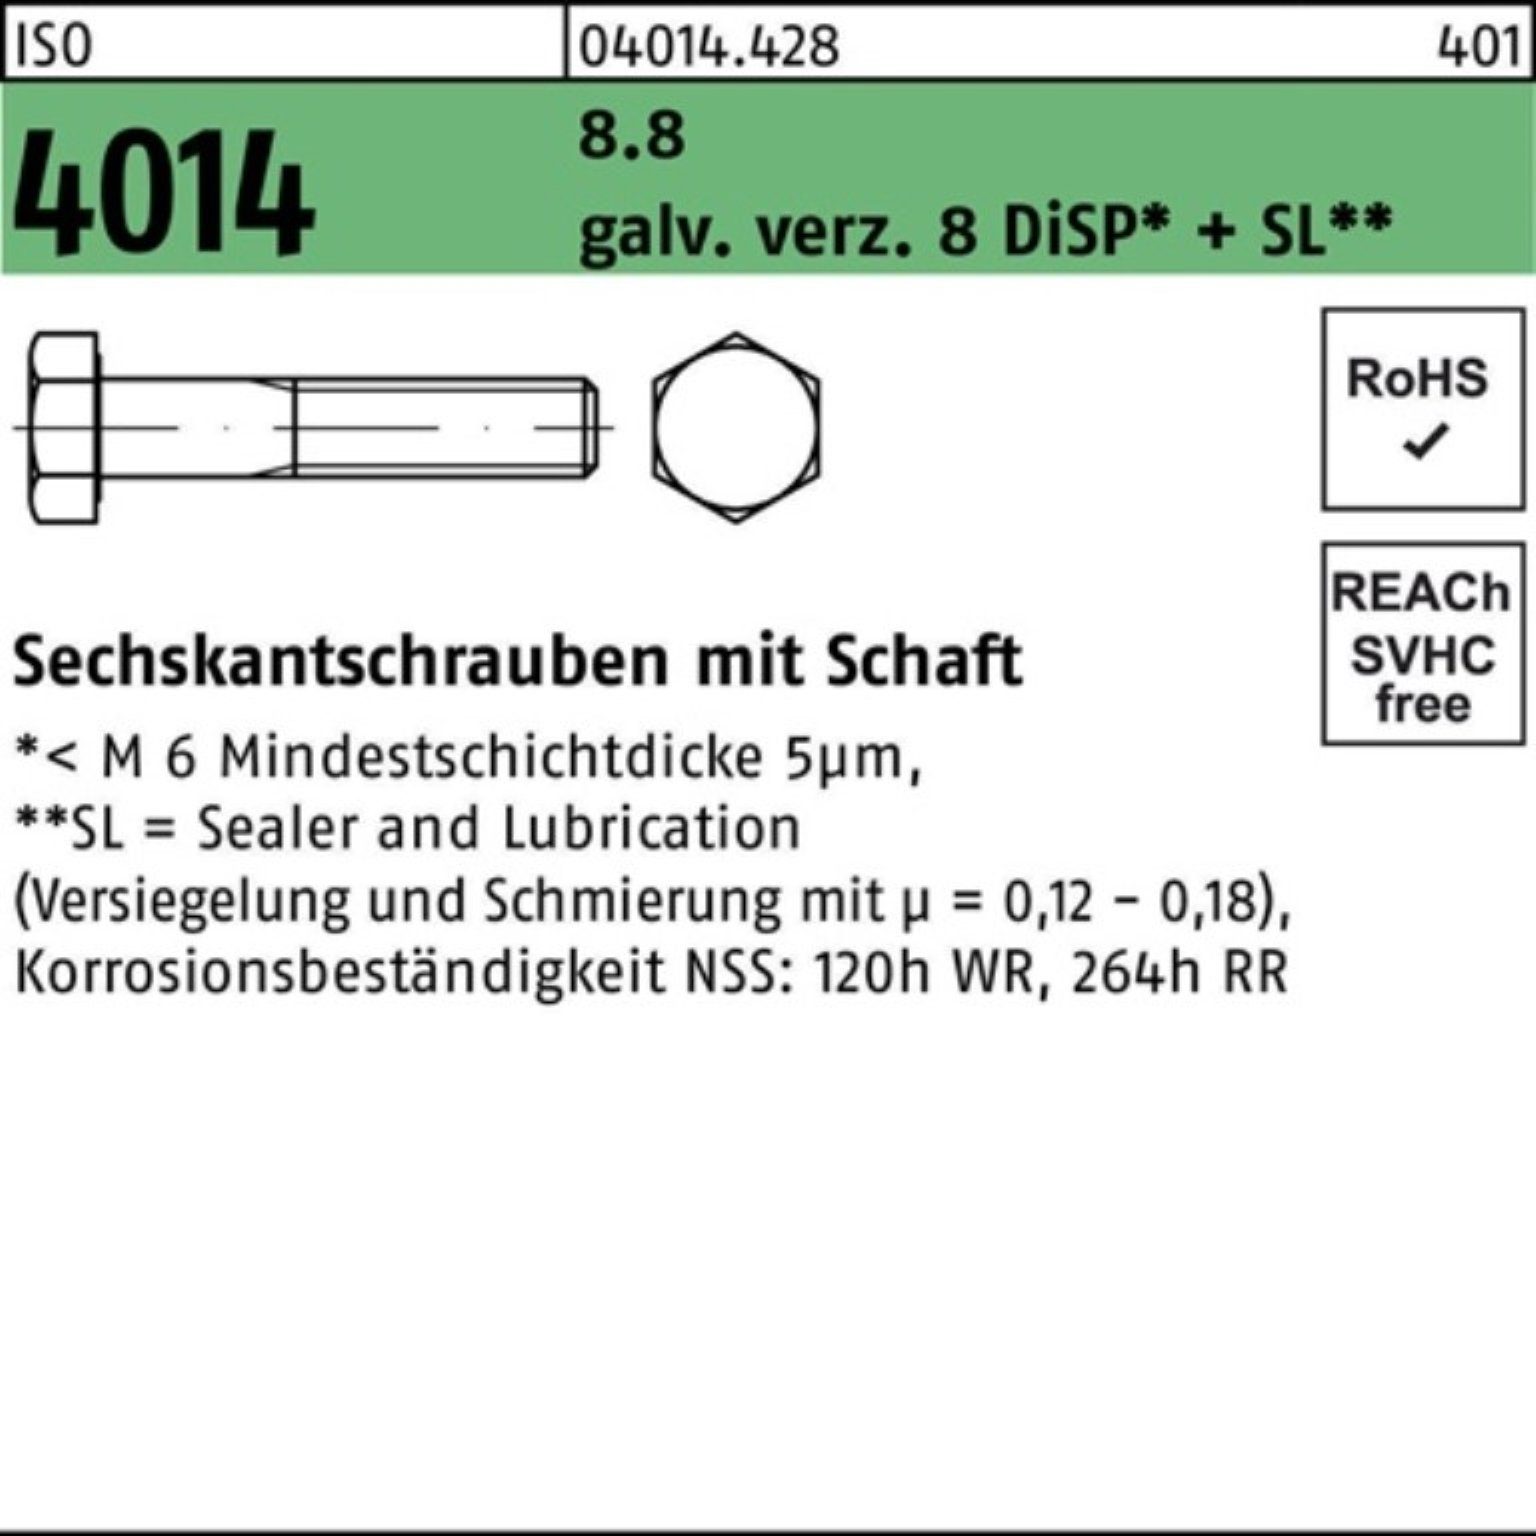 Bufab Sechskantschraube 100er Pack Sechskantschraube ISO 4014 Schaft M14x130 8.8 galv.verz. 8